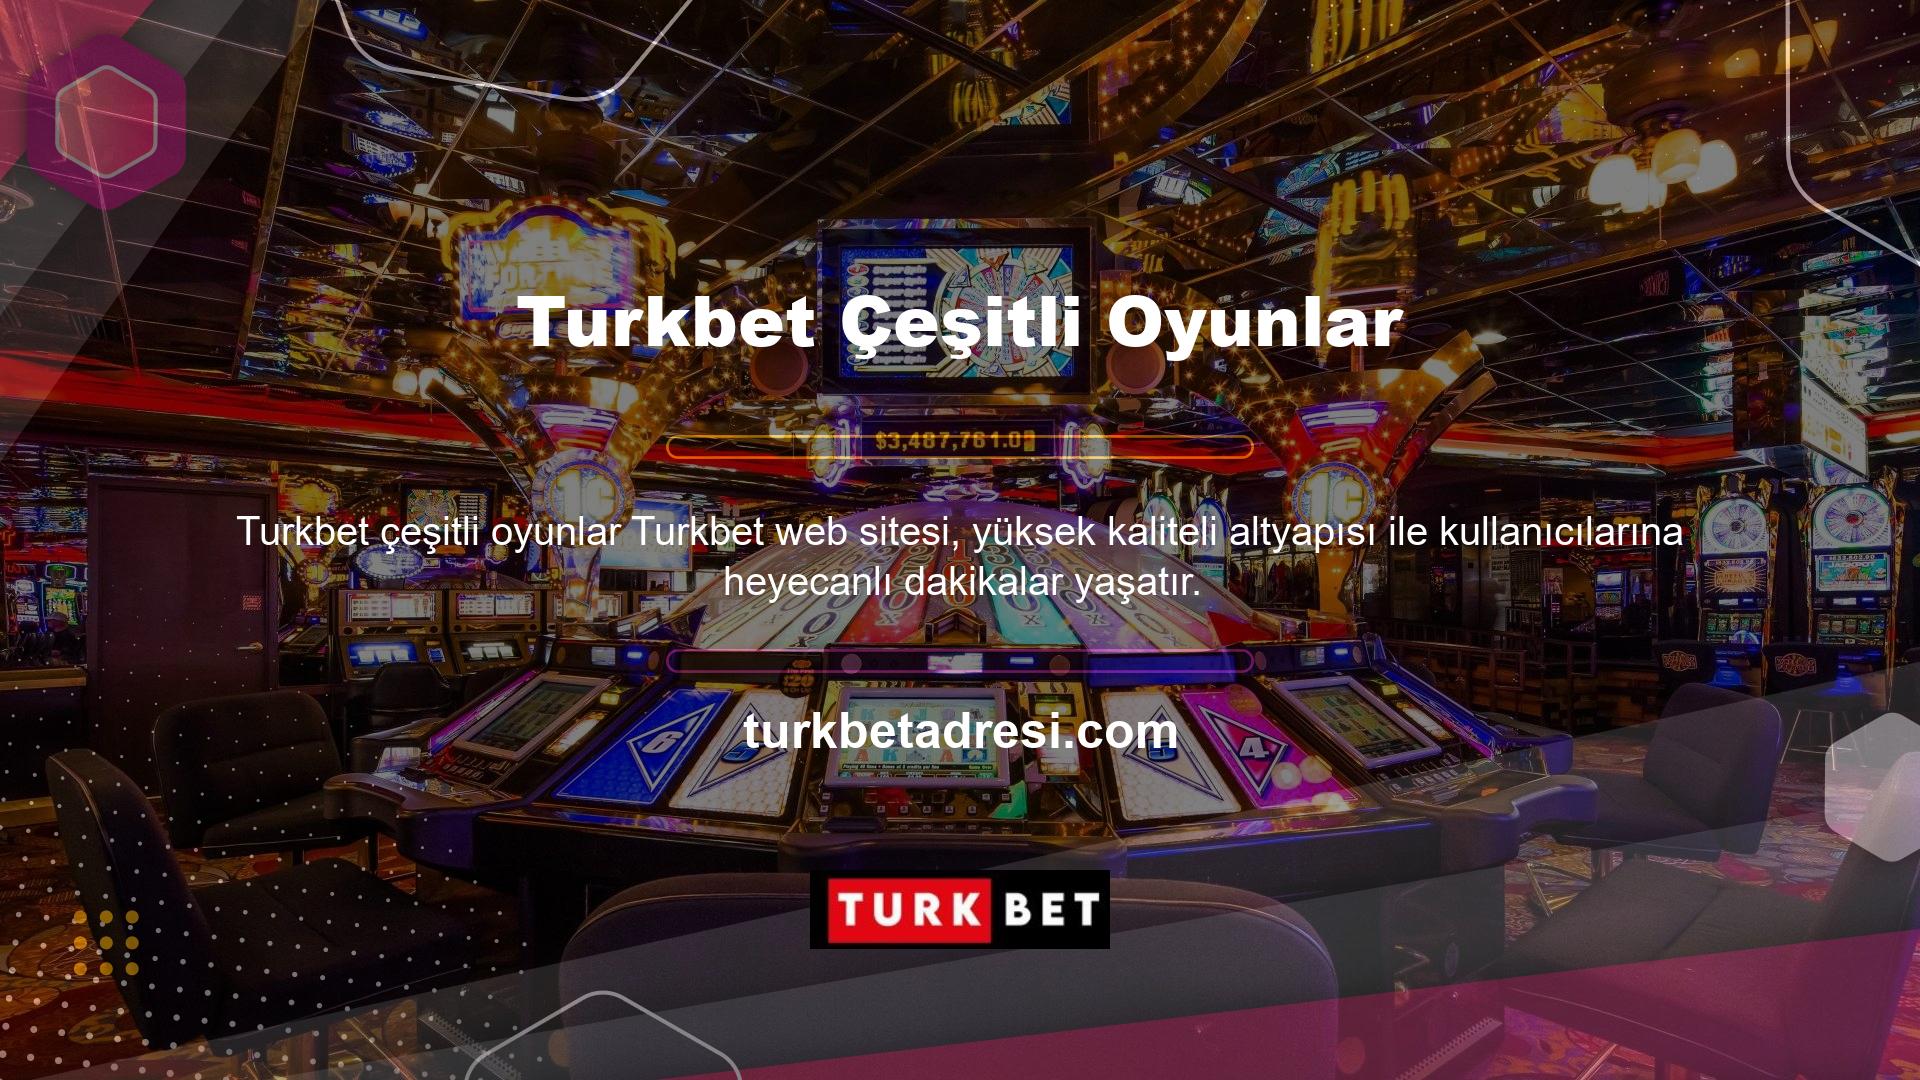 Türkiye’deki en popüler çeşitli oyunlar bu sitedeki oyun seçeneklerinden biridir